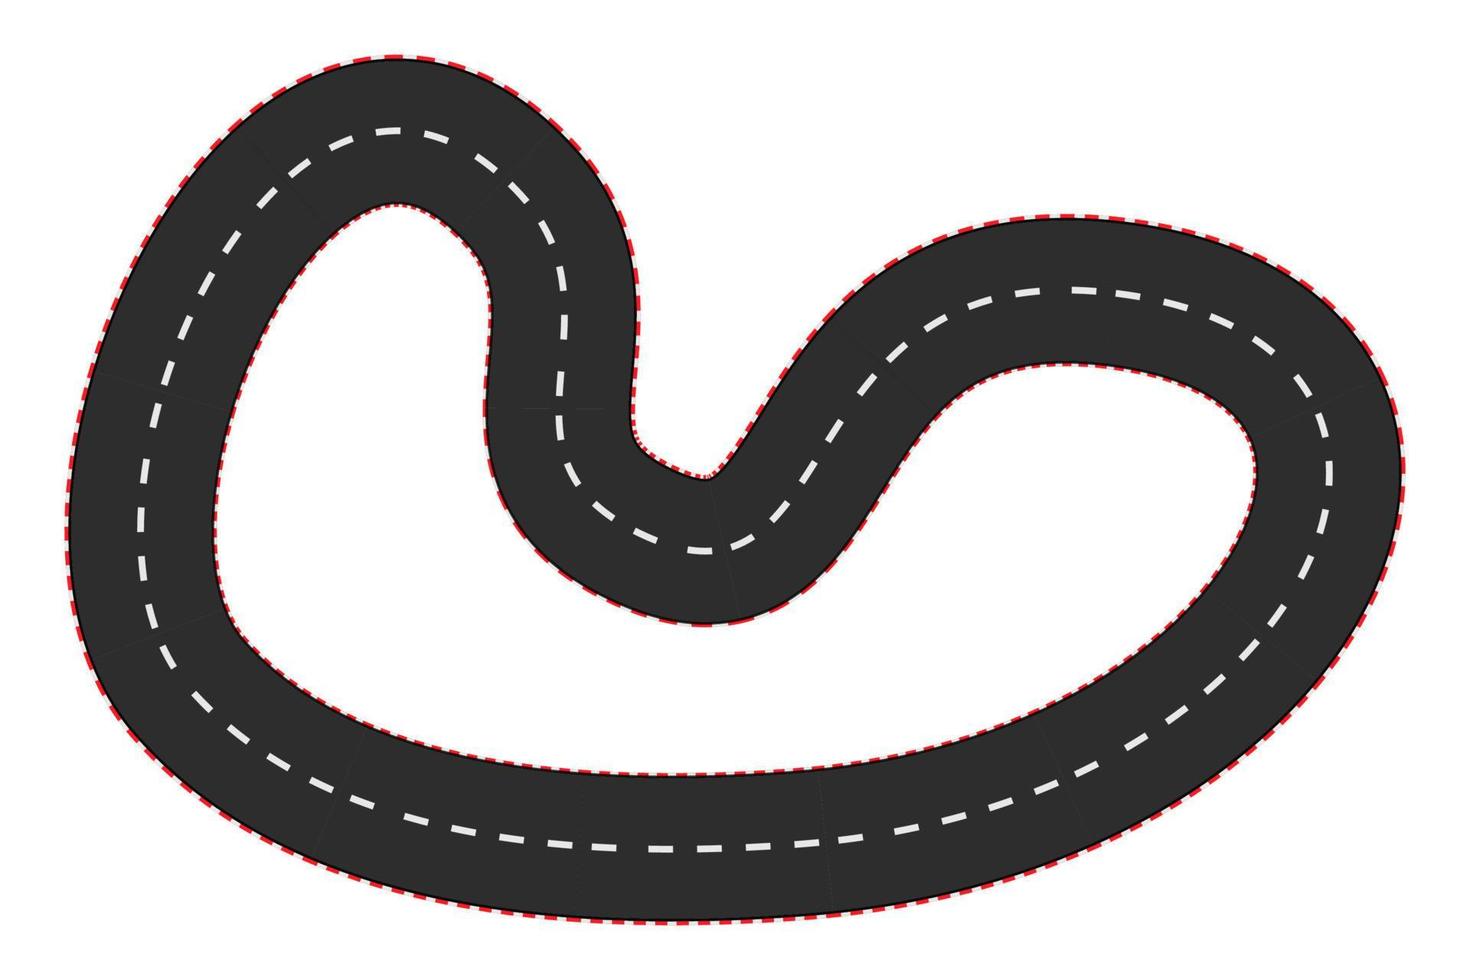 strada vuota da corsa automobilistica, vista dall'alto della pista curva in stile cartone animato isolato su priorità bassa bianca. mappa delle formule sportive. . illustrazione vettoriale